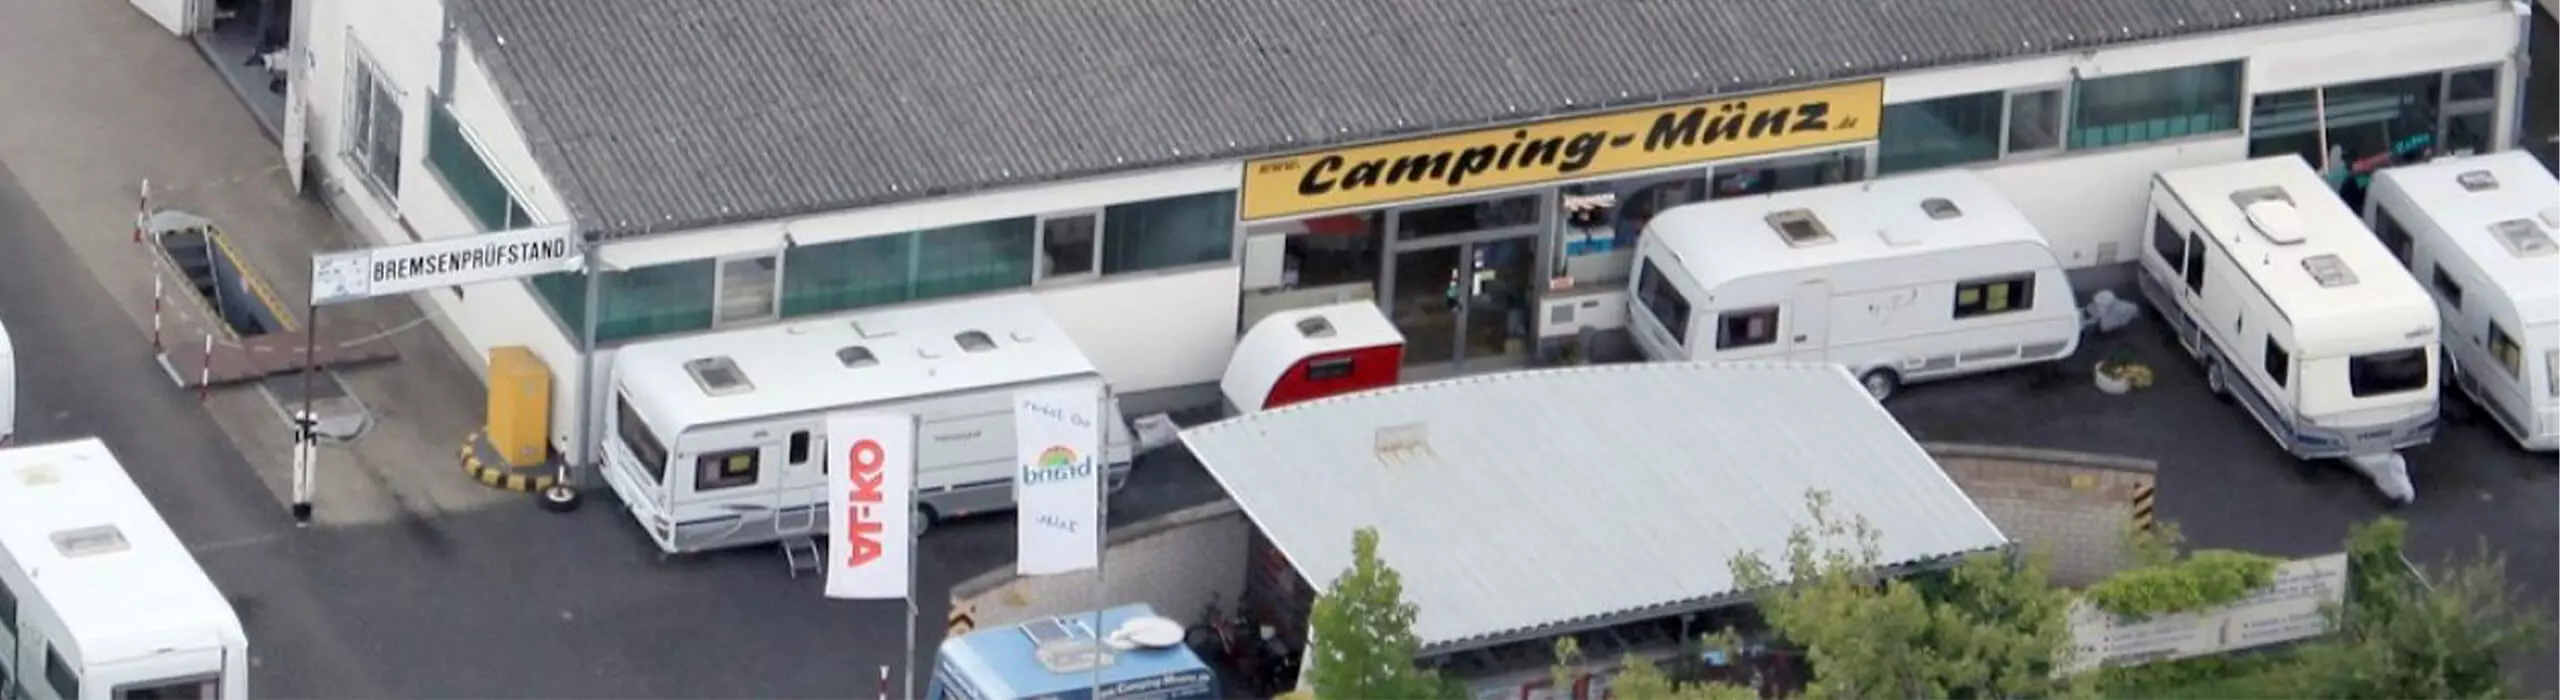 Camping-Münz GmbH & Co. KG